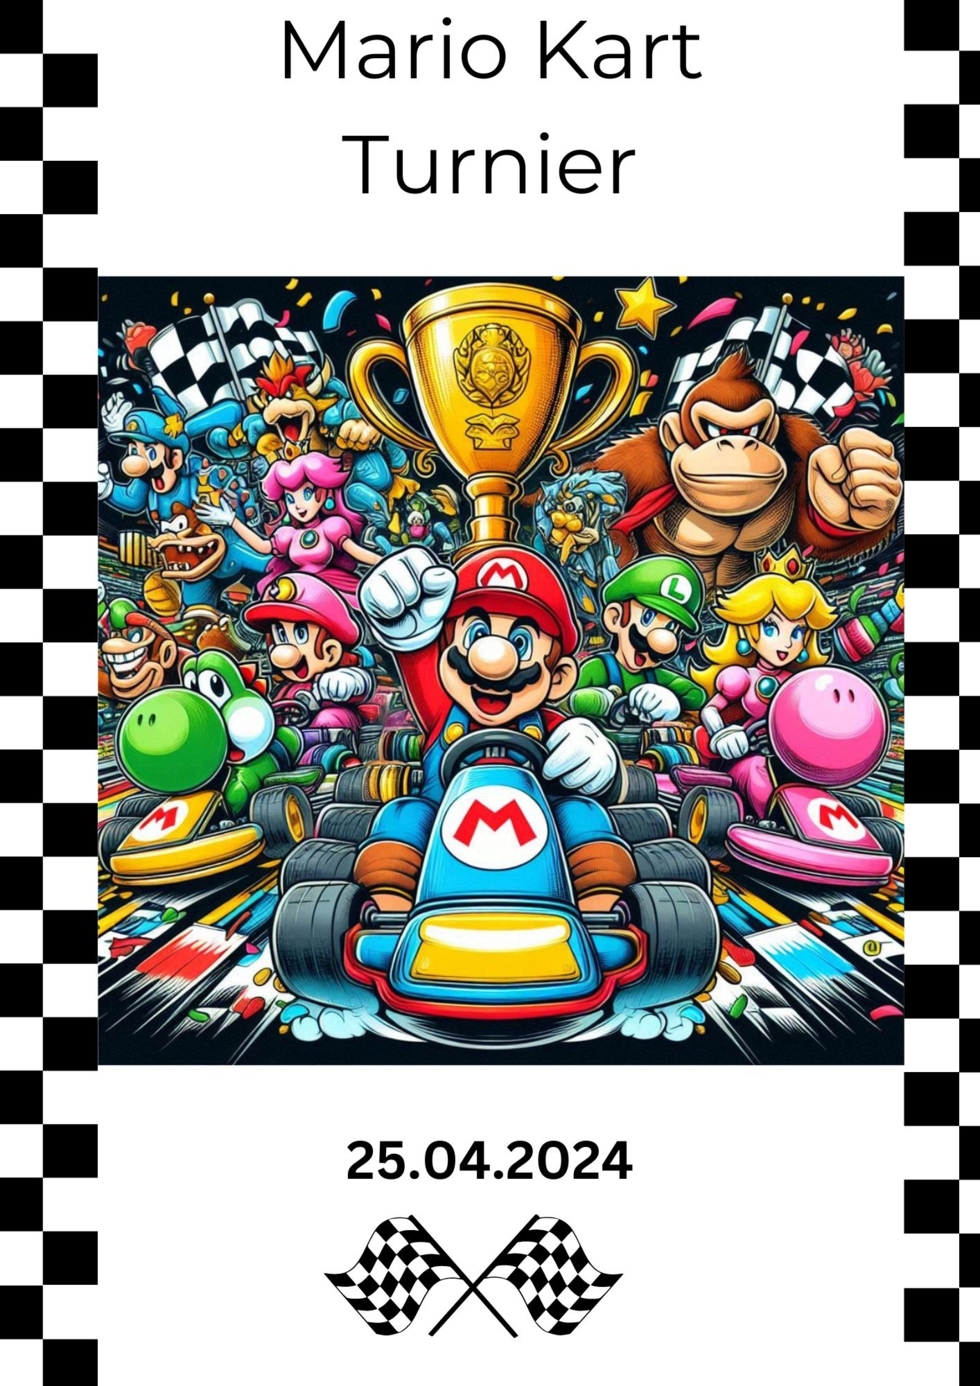 Plakat für eine Mario Kart Turnier am Boys'Day